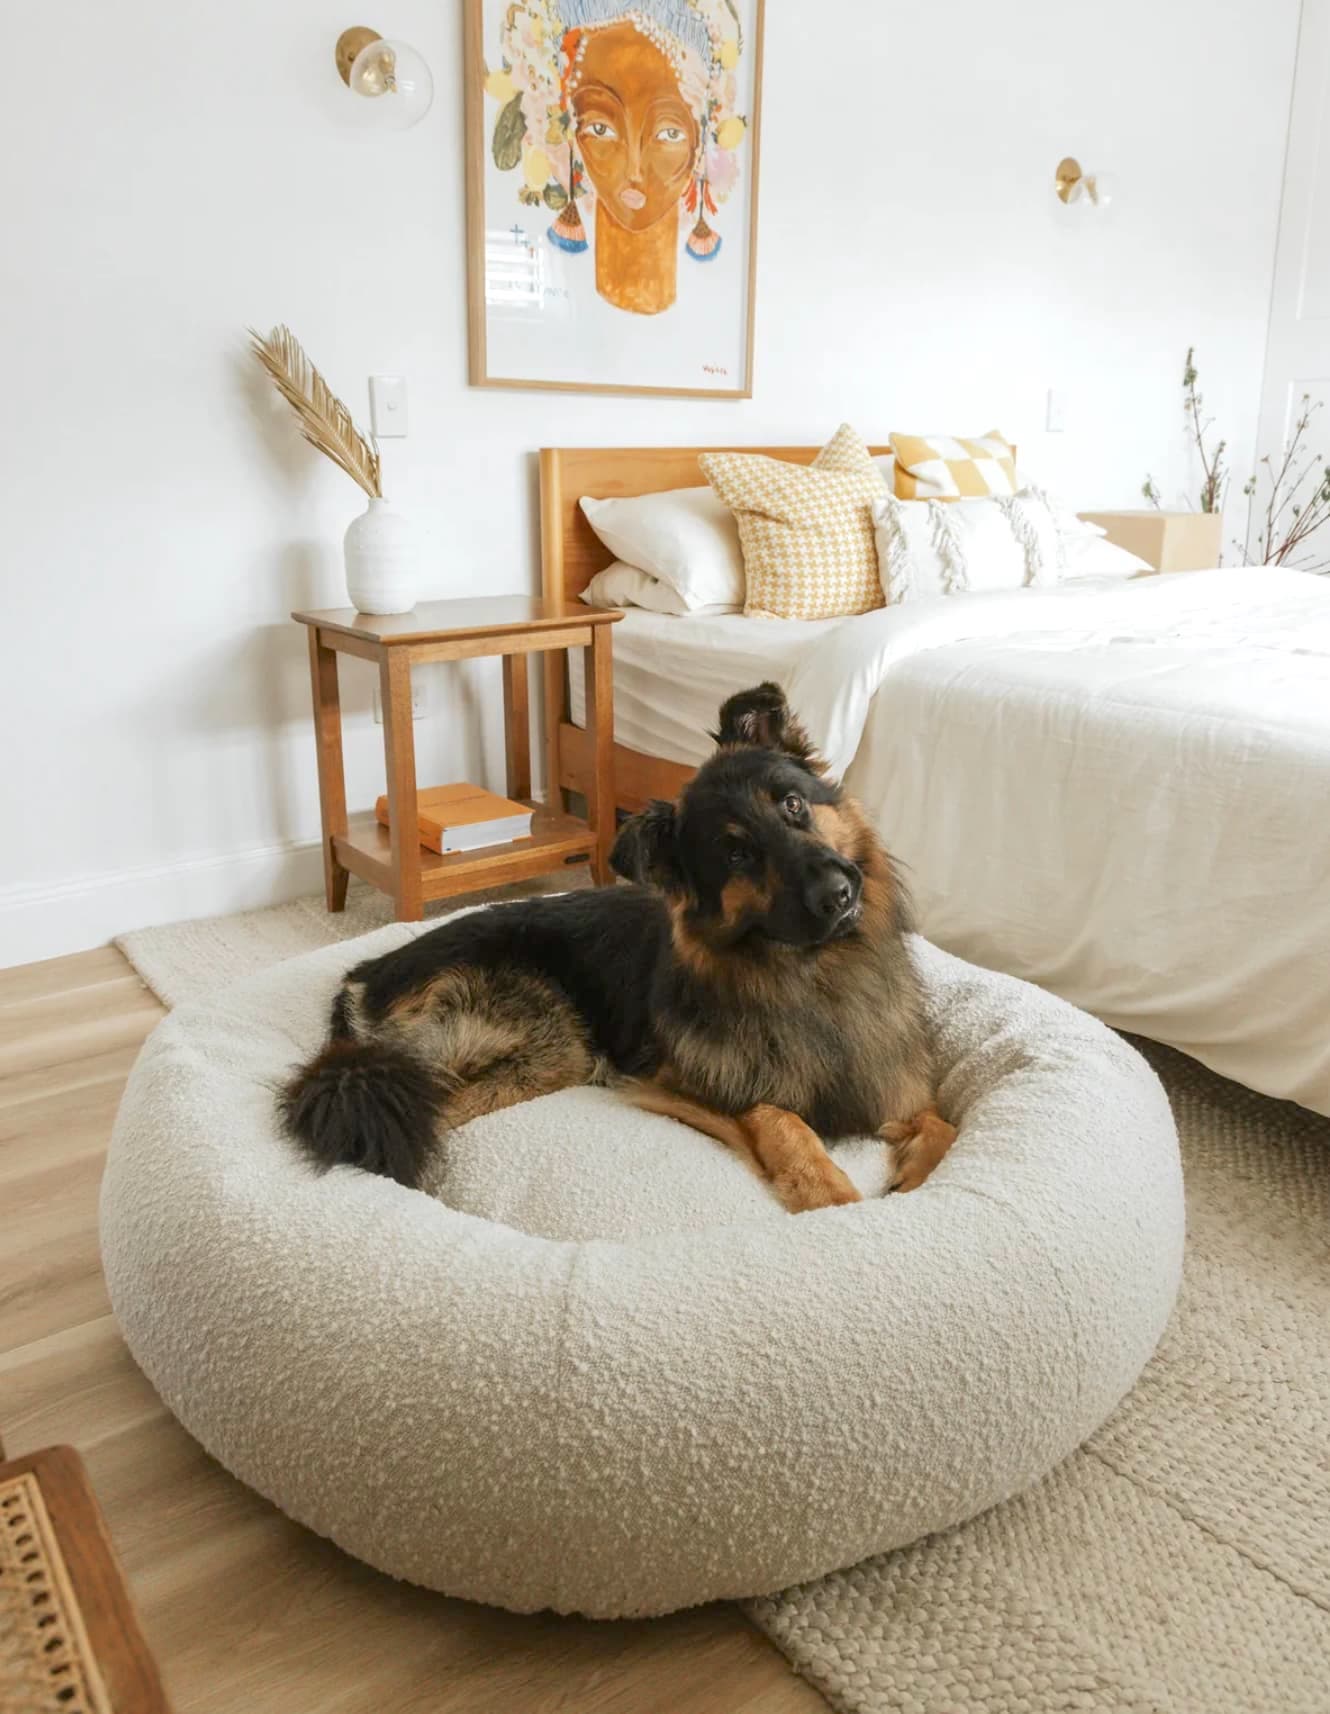 large dog beds